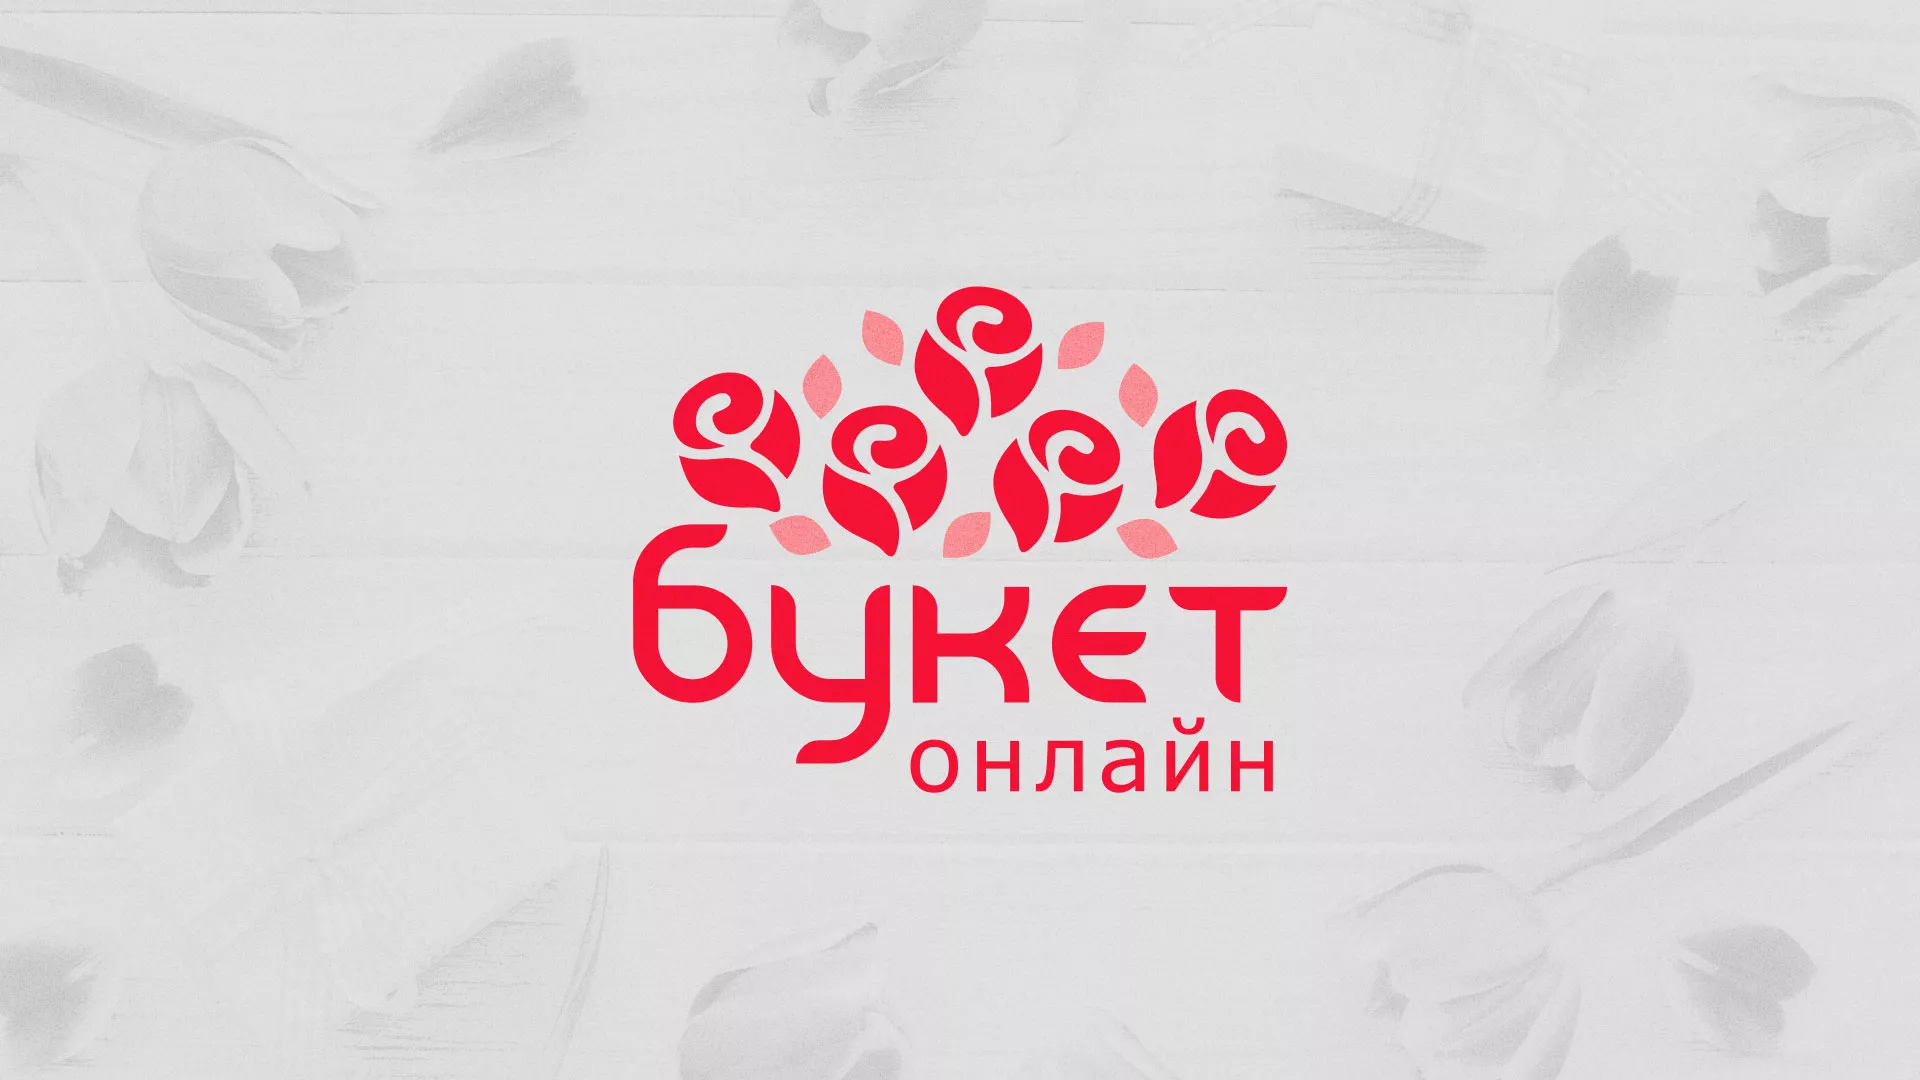 Создание интернет-магазина «Букет-онлайн» по цветам в Мурманске